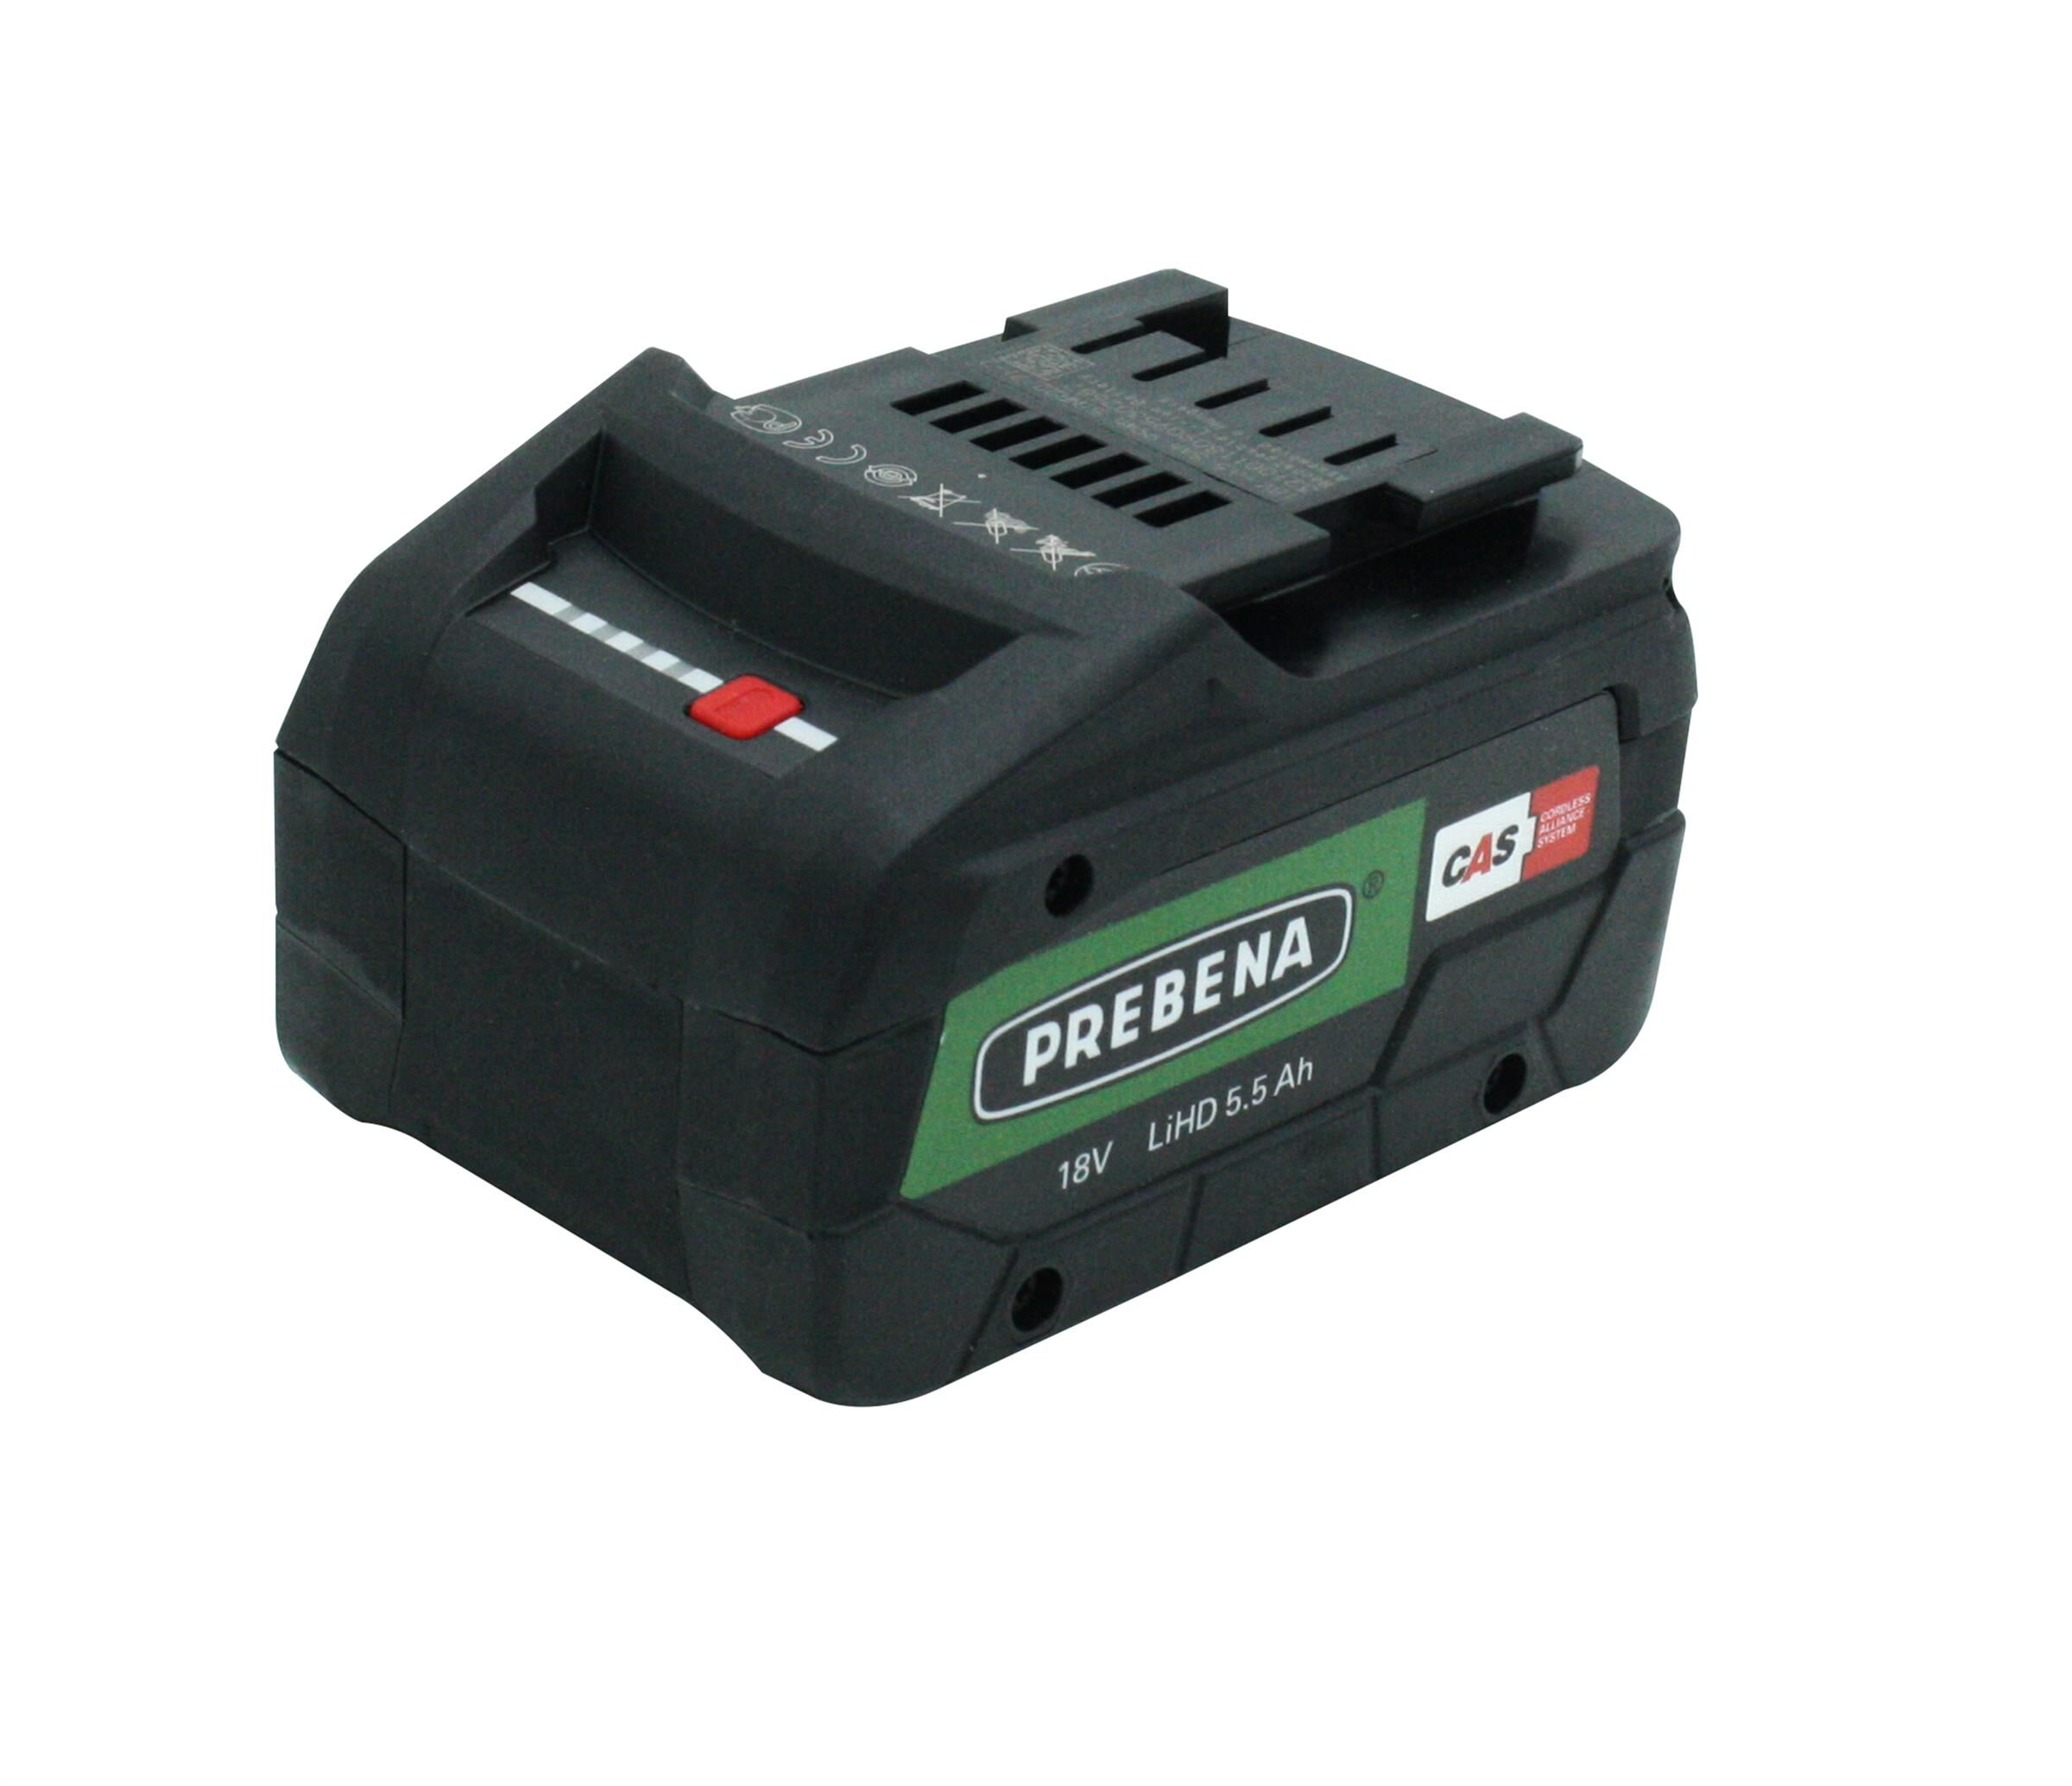 AKKU18-5,5-LiHD Batterie ad alte prestazioni da 5,5 Ah 18 V